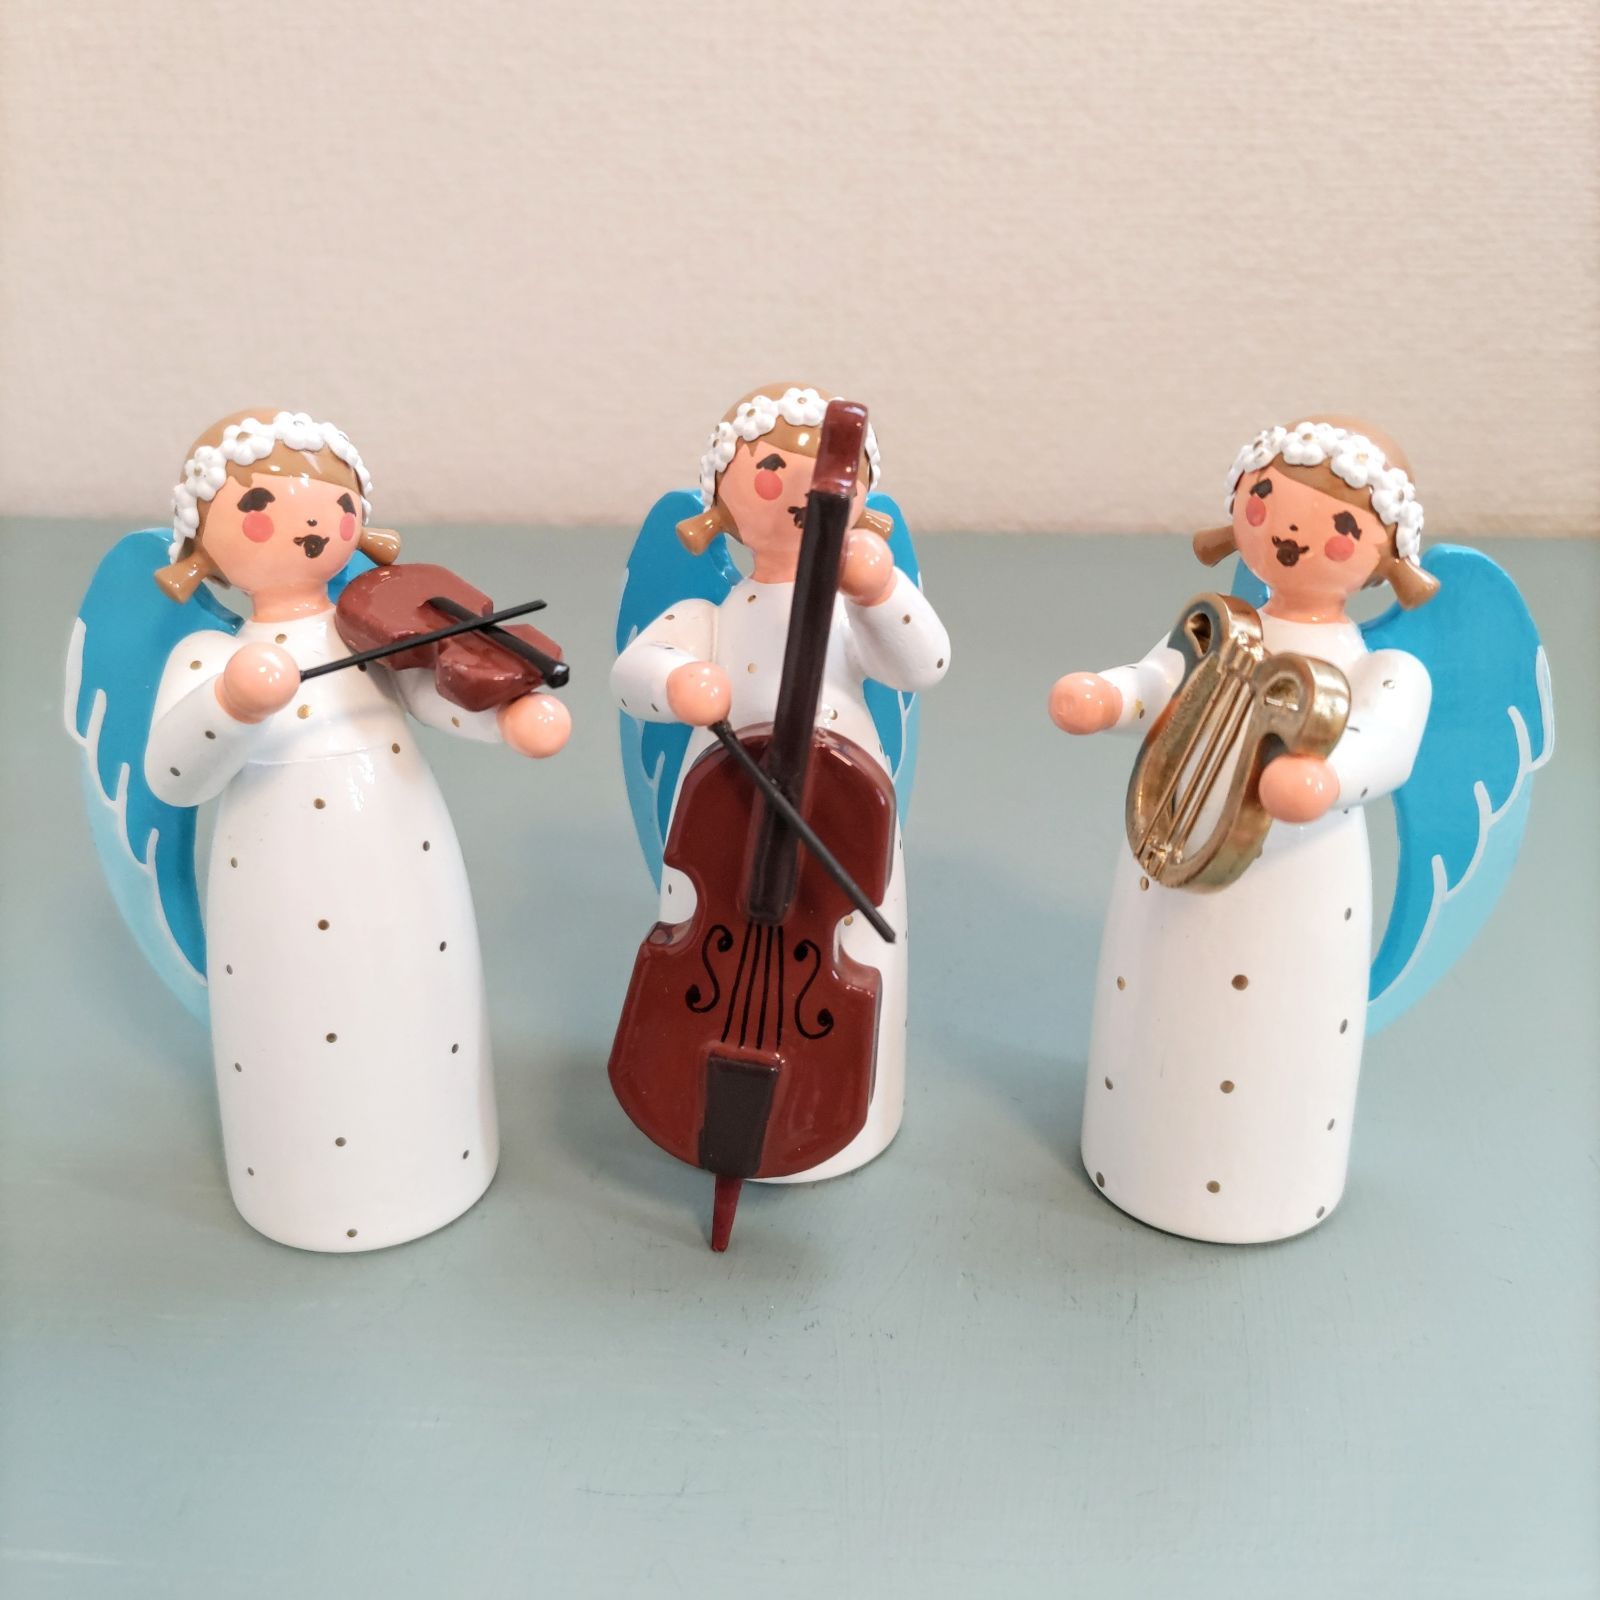 花かんむりの天使 ヴァイオリン ドイツ木工芸品 ドイツ雑貨 ミニチュア 木製人形 エンジェル 楽器 メルカリShops